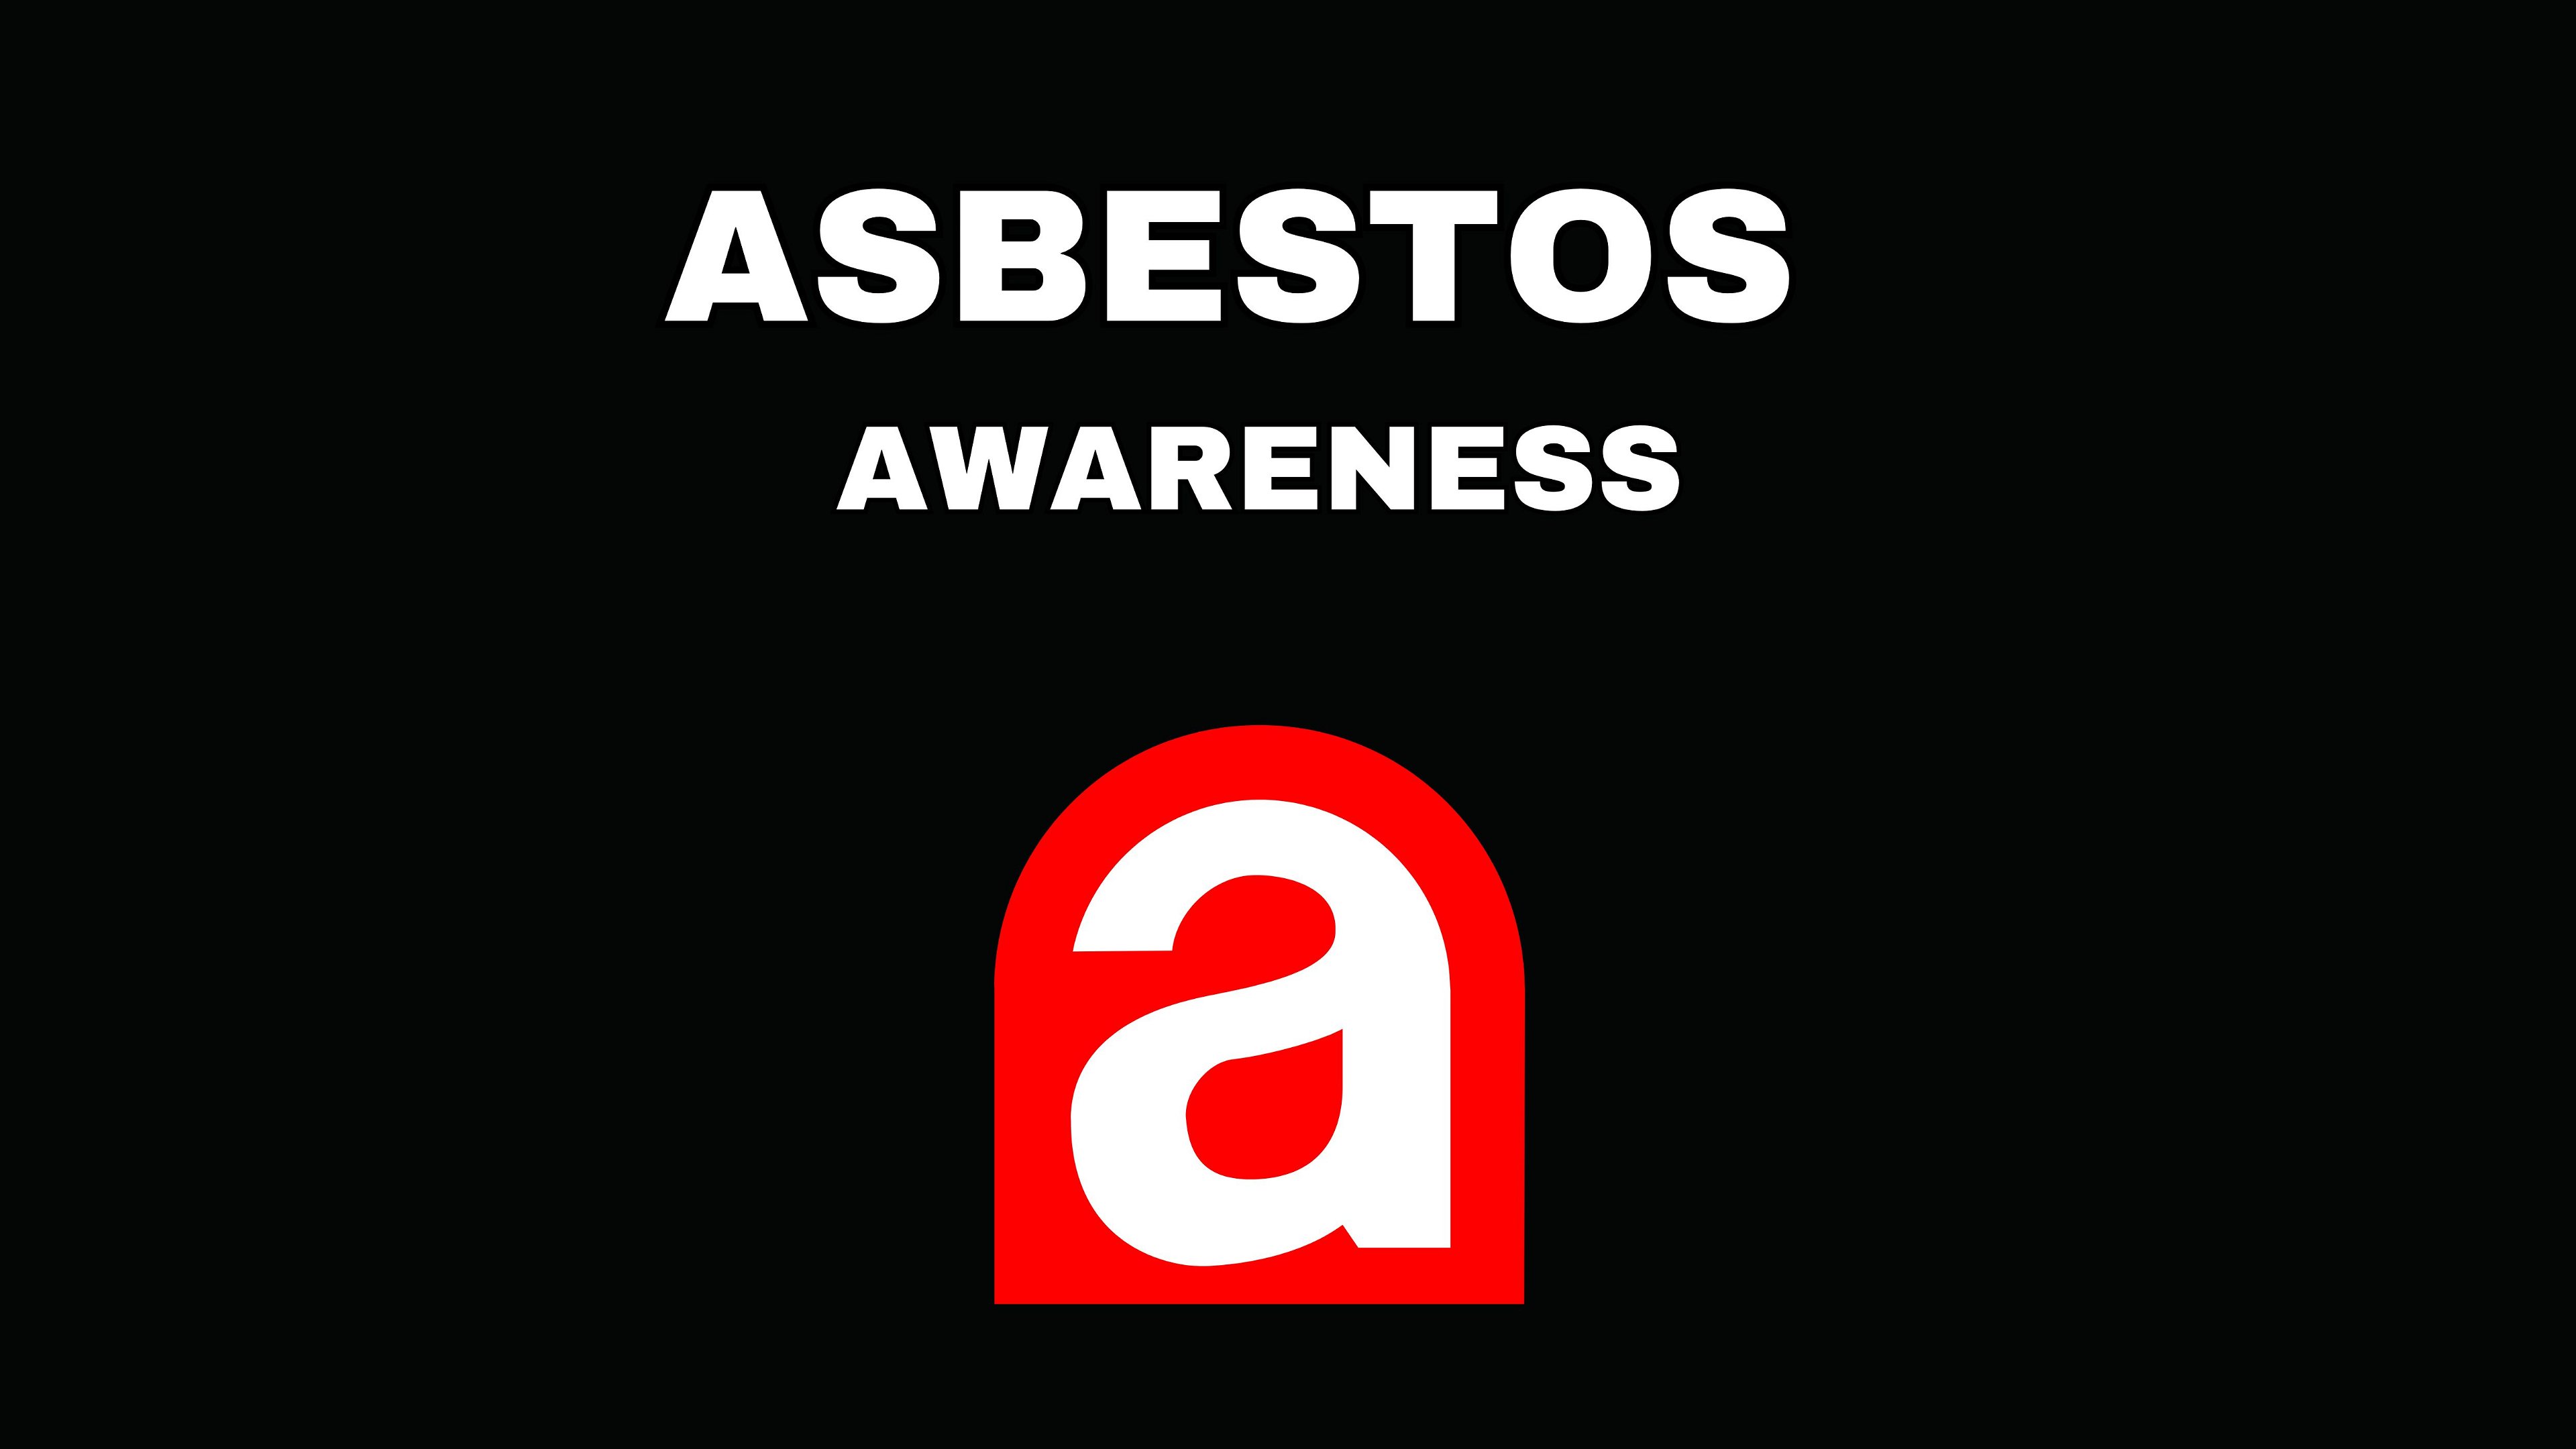 Level 2 Asbestos Awareness